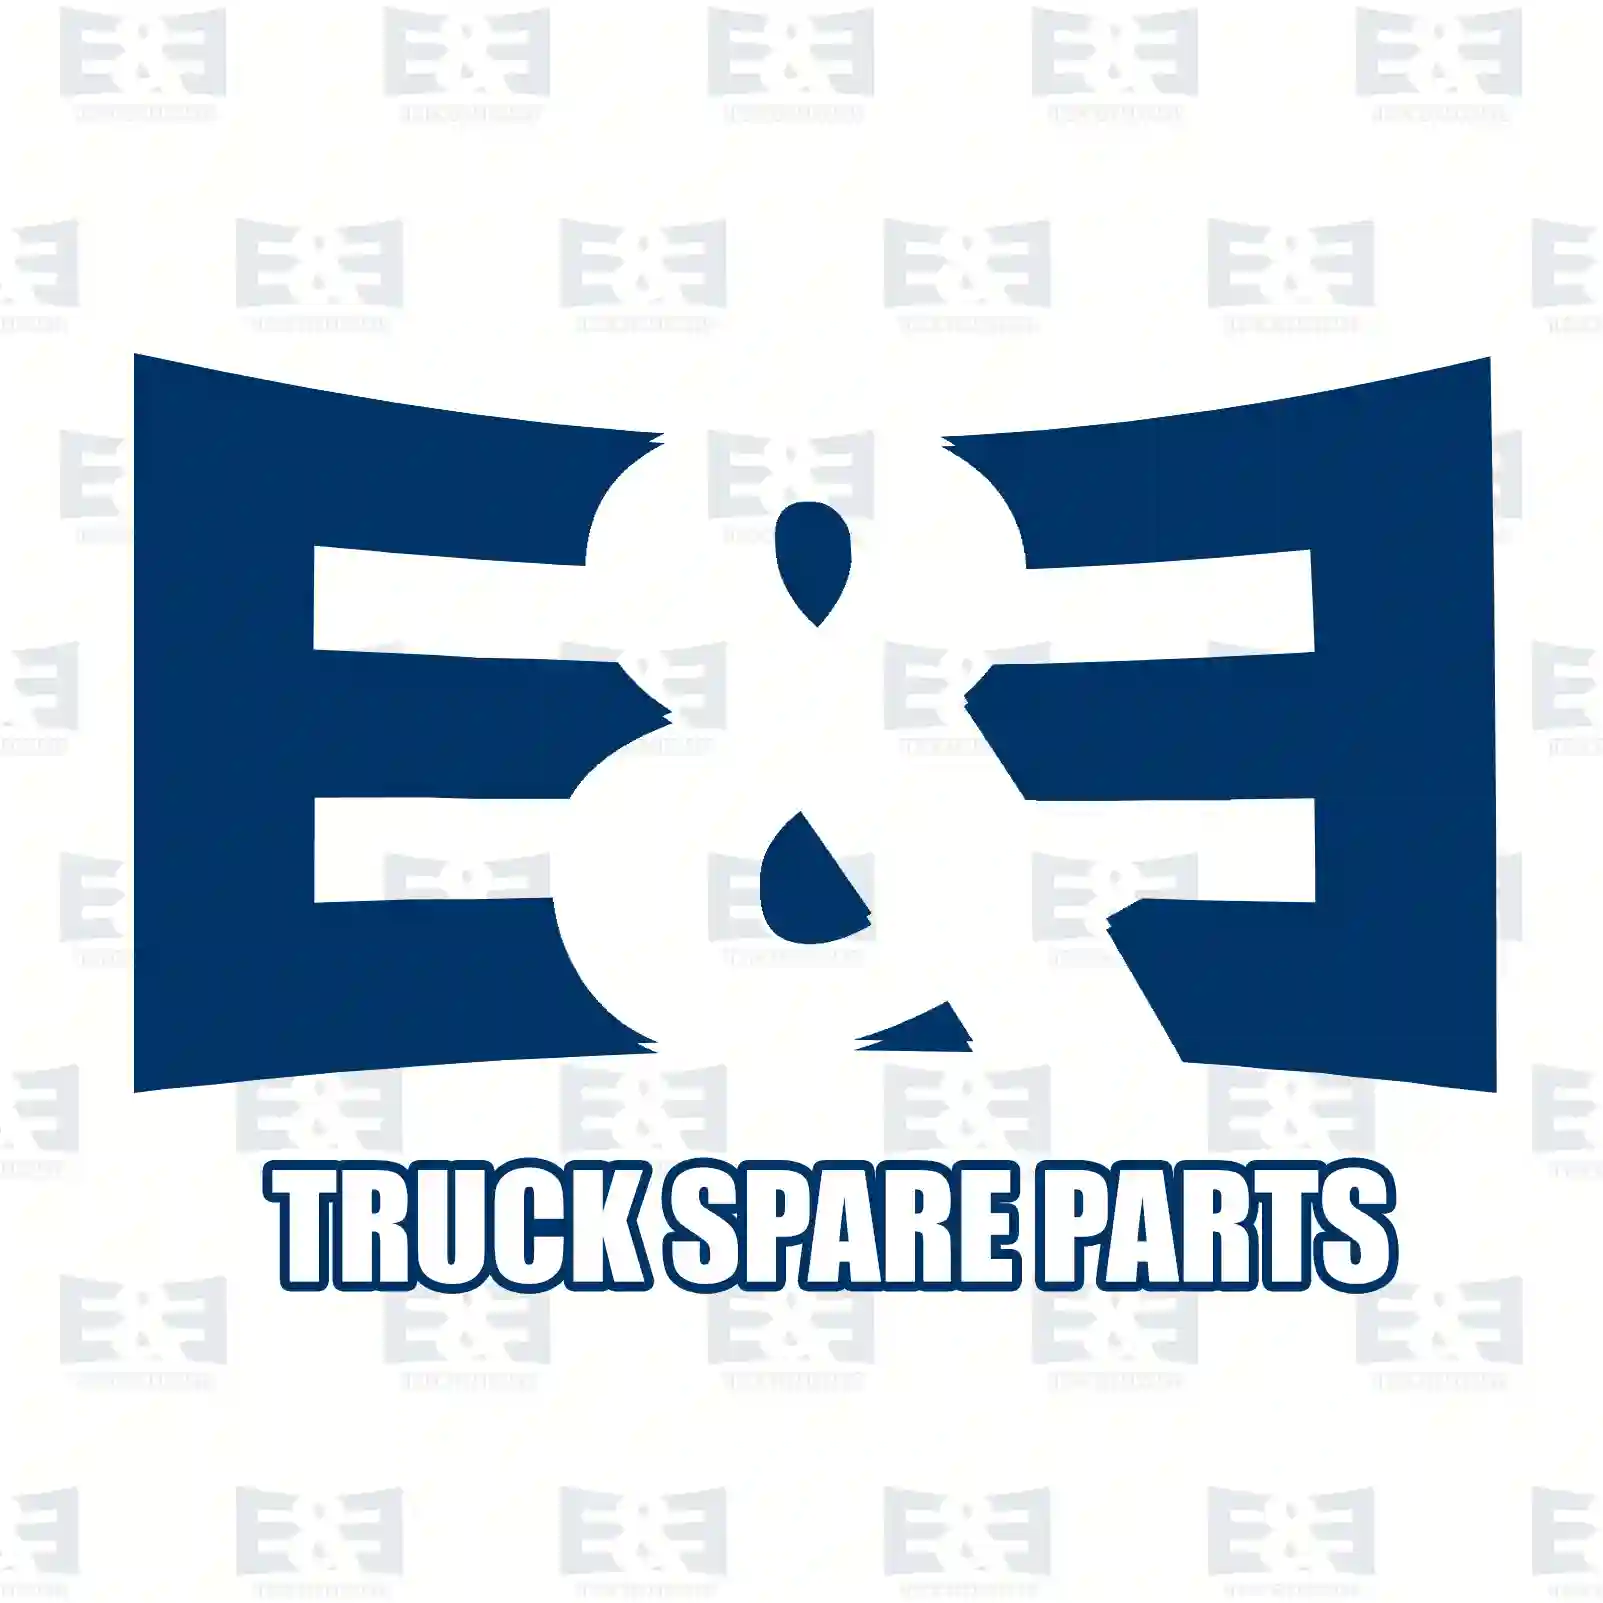 Shock absorber, 2E2283074, 3953652, 6790182, , , ||  2E2283074 E&E Truck Spare Parts | Truck Spare Parts, Auotomotive Spare Parts Shock absorber, 2E2283074, 3953652, 6790182, , , ||  2E2283074 E&E Truck Spare Parts | Truck Spare Parts, Auotomotive Spare Parts